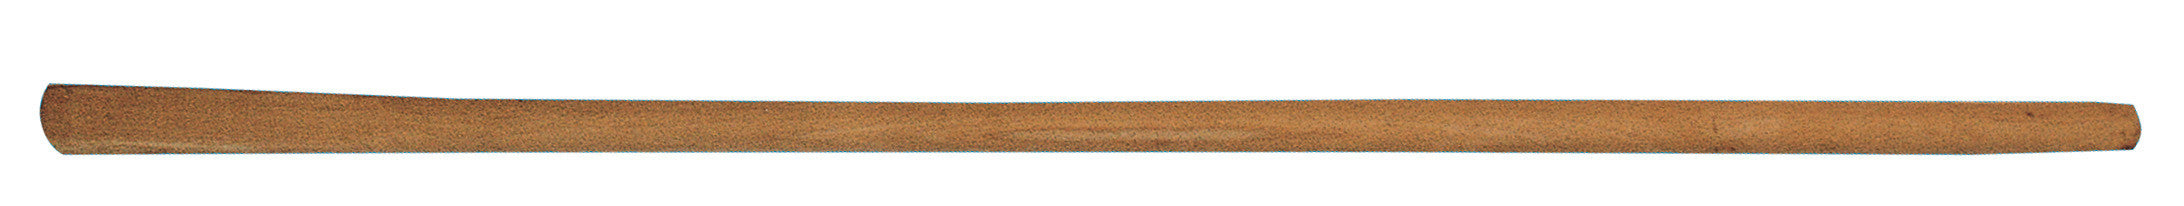 Manico zappa faggio o.q.4,5x4,5 cm.135 fig.3 ITALMANICI